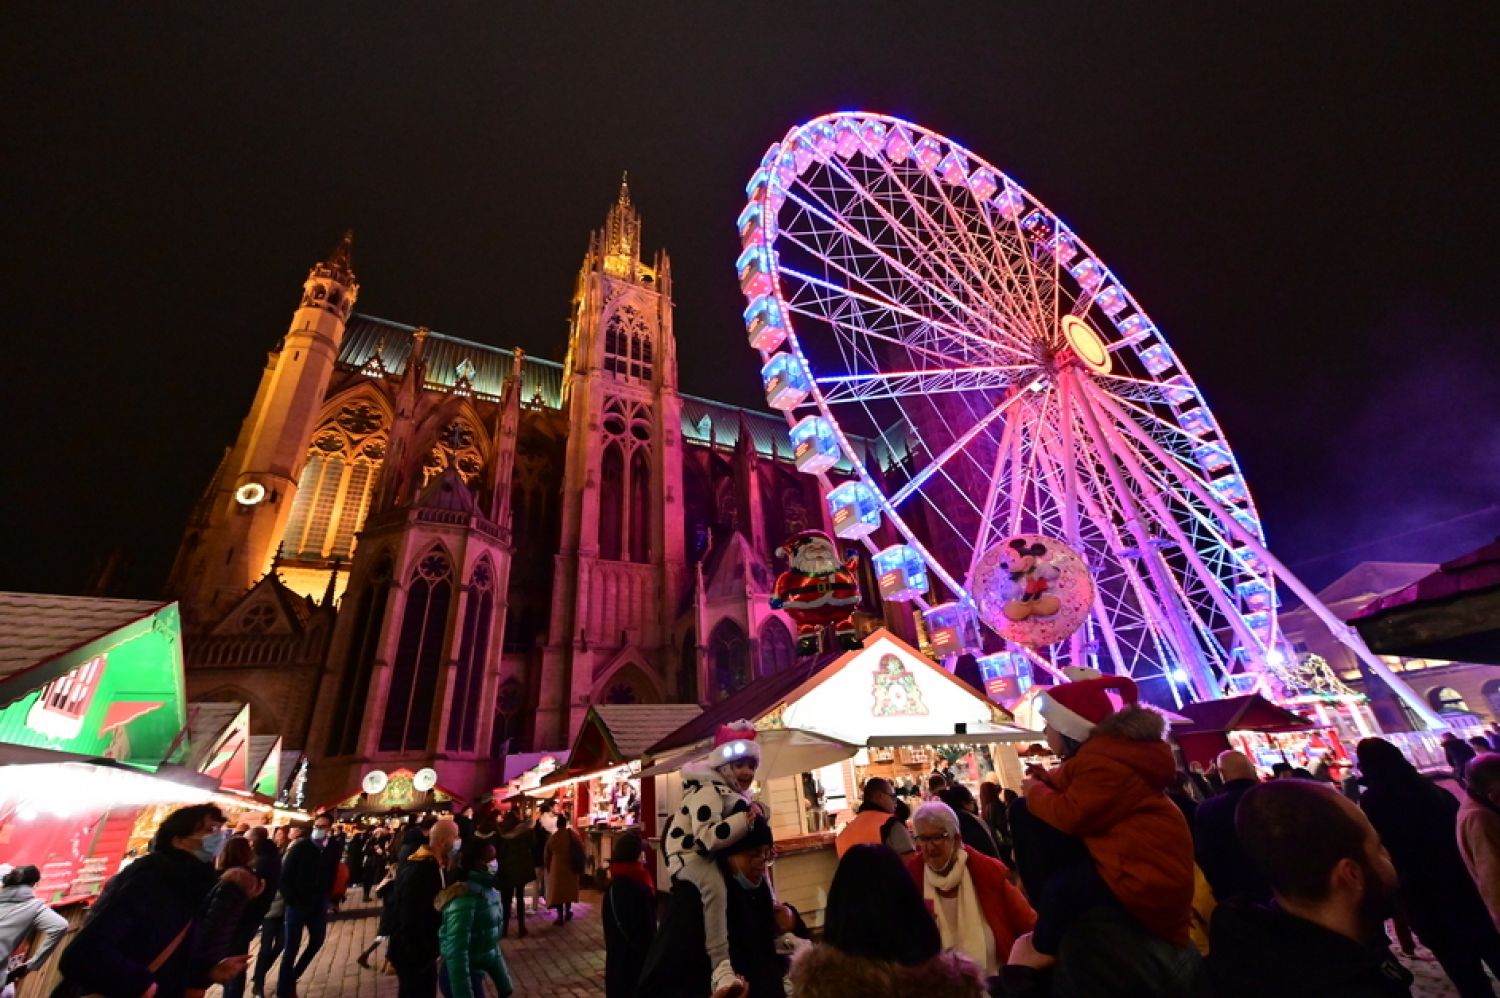 La ville de Metz élue troisième plus beau marché de Noël d’Europe